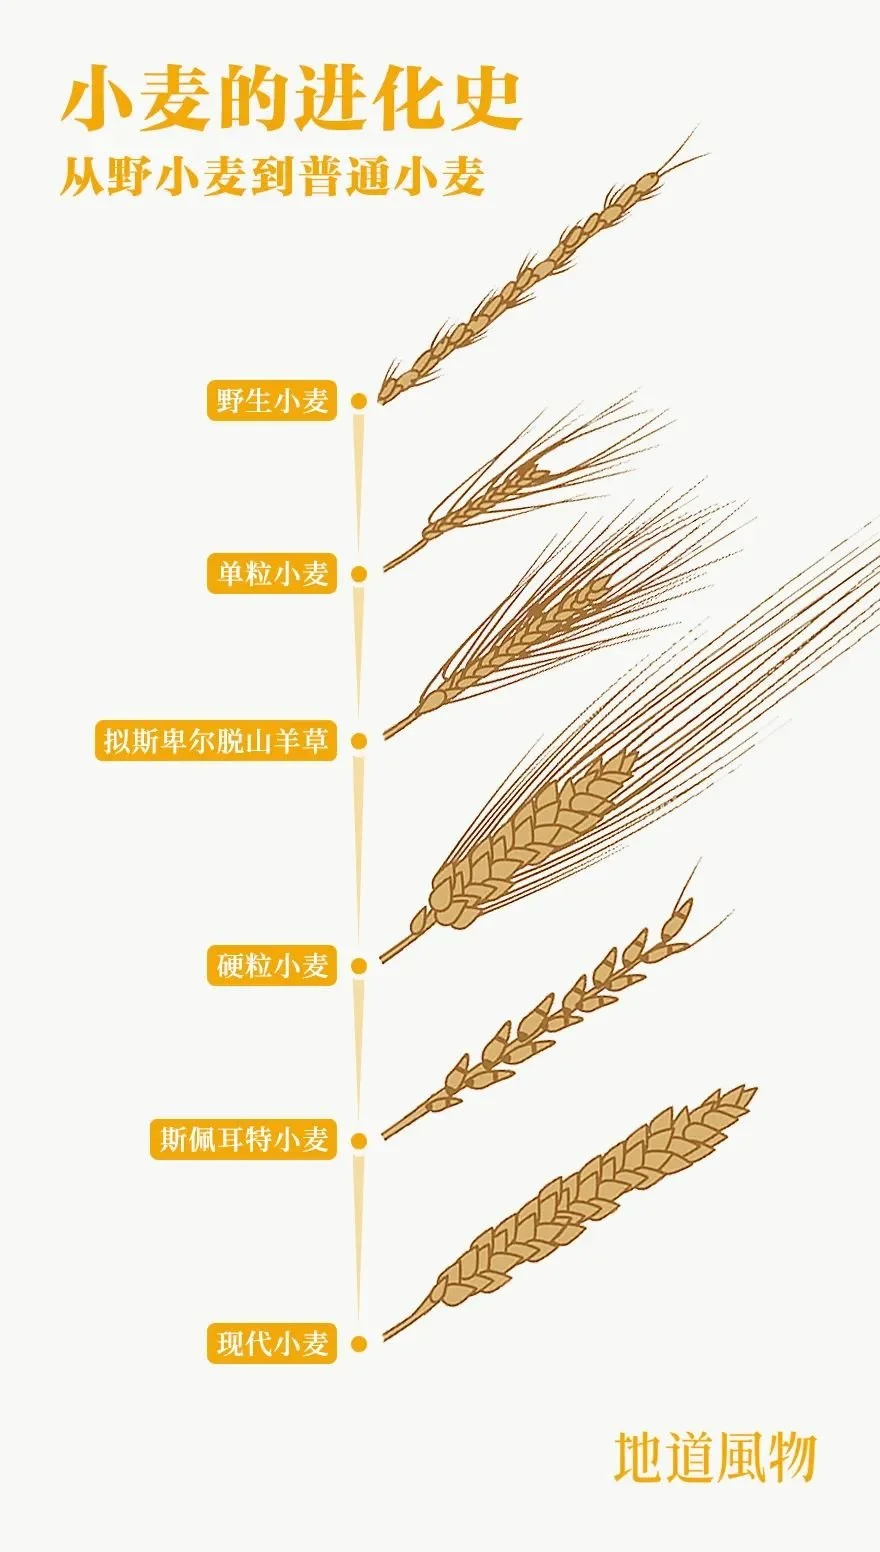 人类驯化小麦的历史十分漫长，1万年前，小麦还不过是野草中的一种，如今，小麦已经成为全球播种量最大、产量最多、分布最广的粮食作物。 制图/刘航